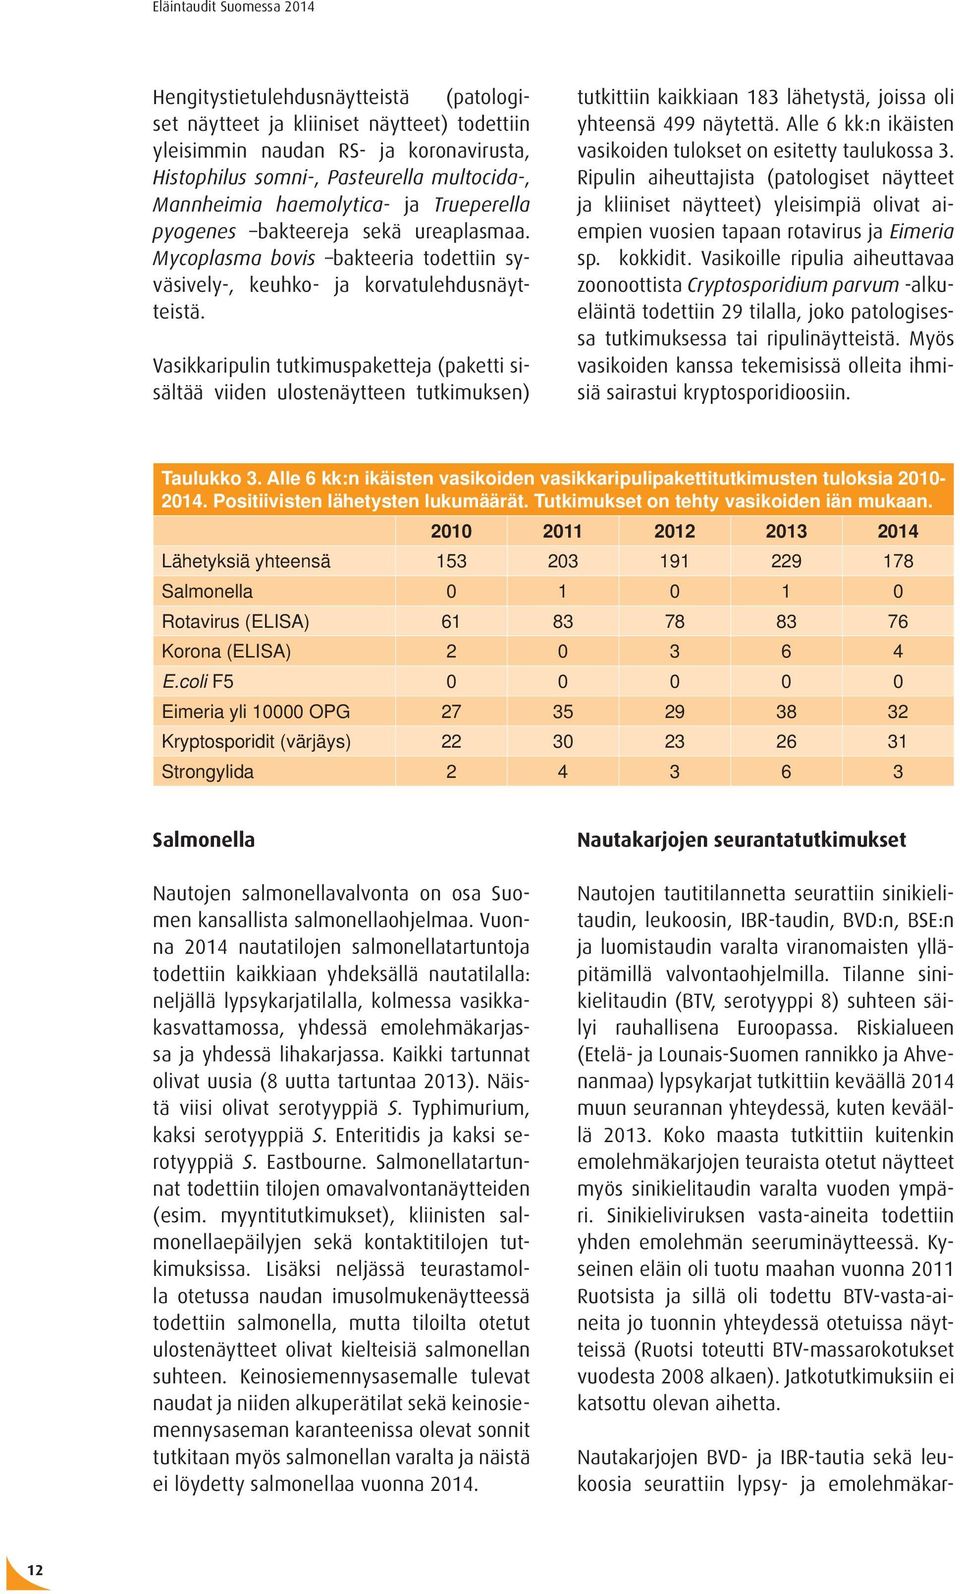 Vasikkaripulin tutkimuspaketteja (paketti sisältää viiden ulostenäytteen tutkimuksen) Nautakarjojen BVD- ja IBR-tautia sekä leukoosia seurattiin lypsy- ja emolehmäkartutkittiin kaikkiaan 183